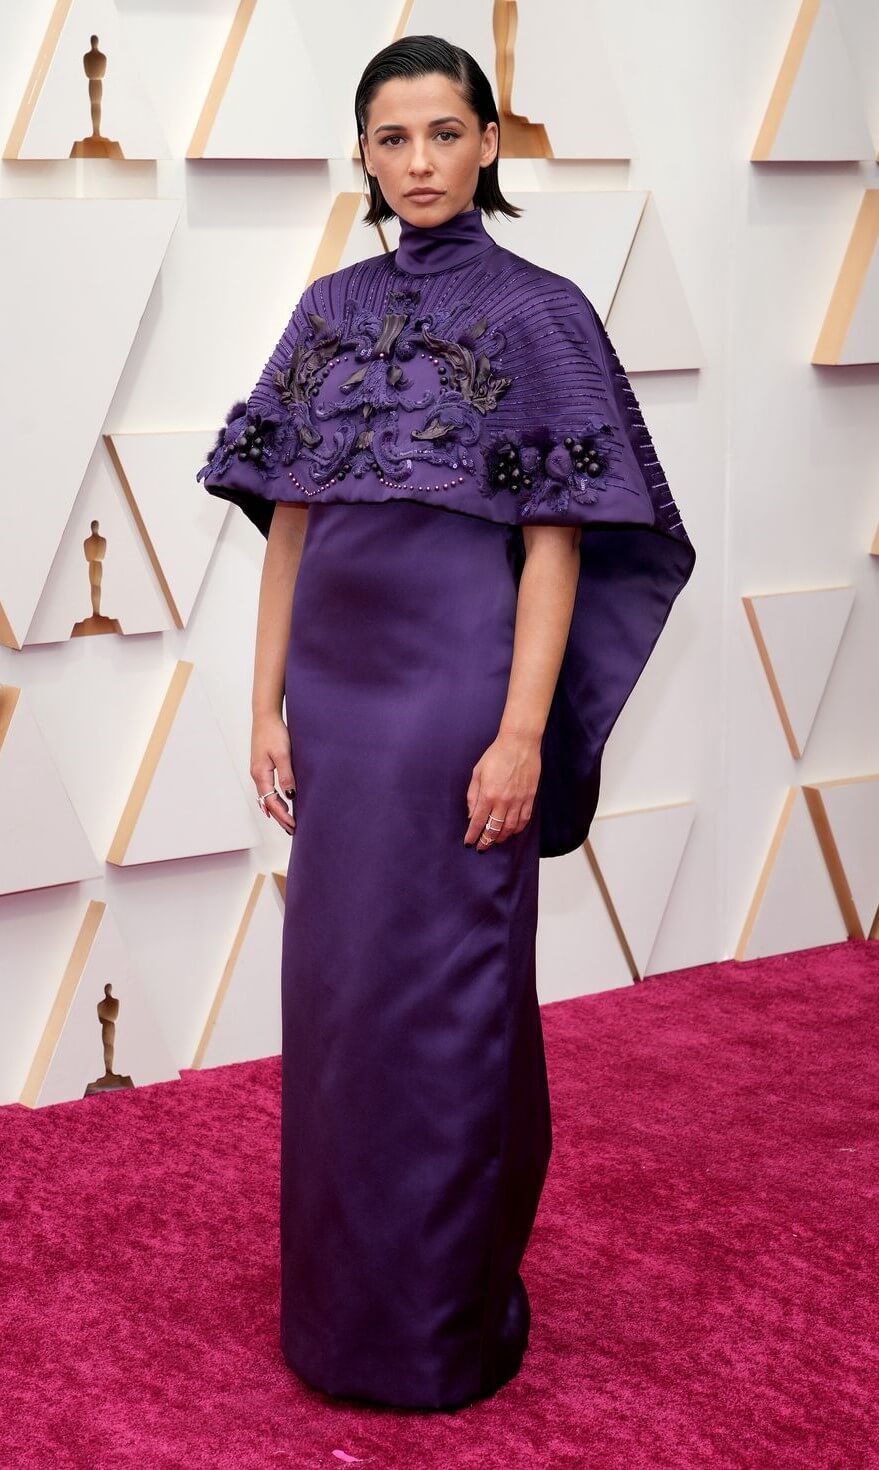 Naomi Scott Looks Majestic In a Regal Purple Dress